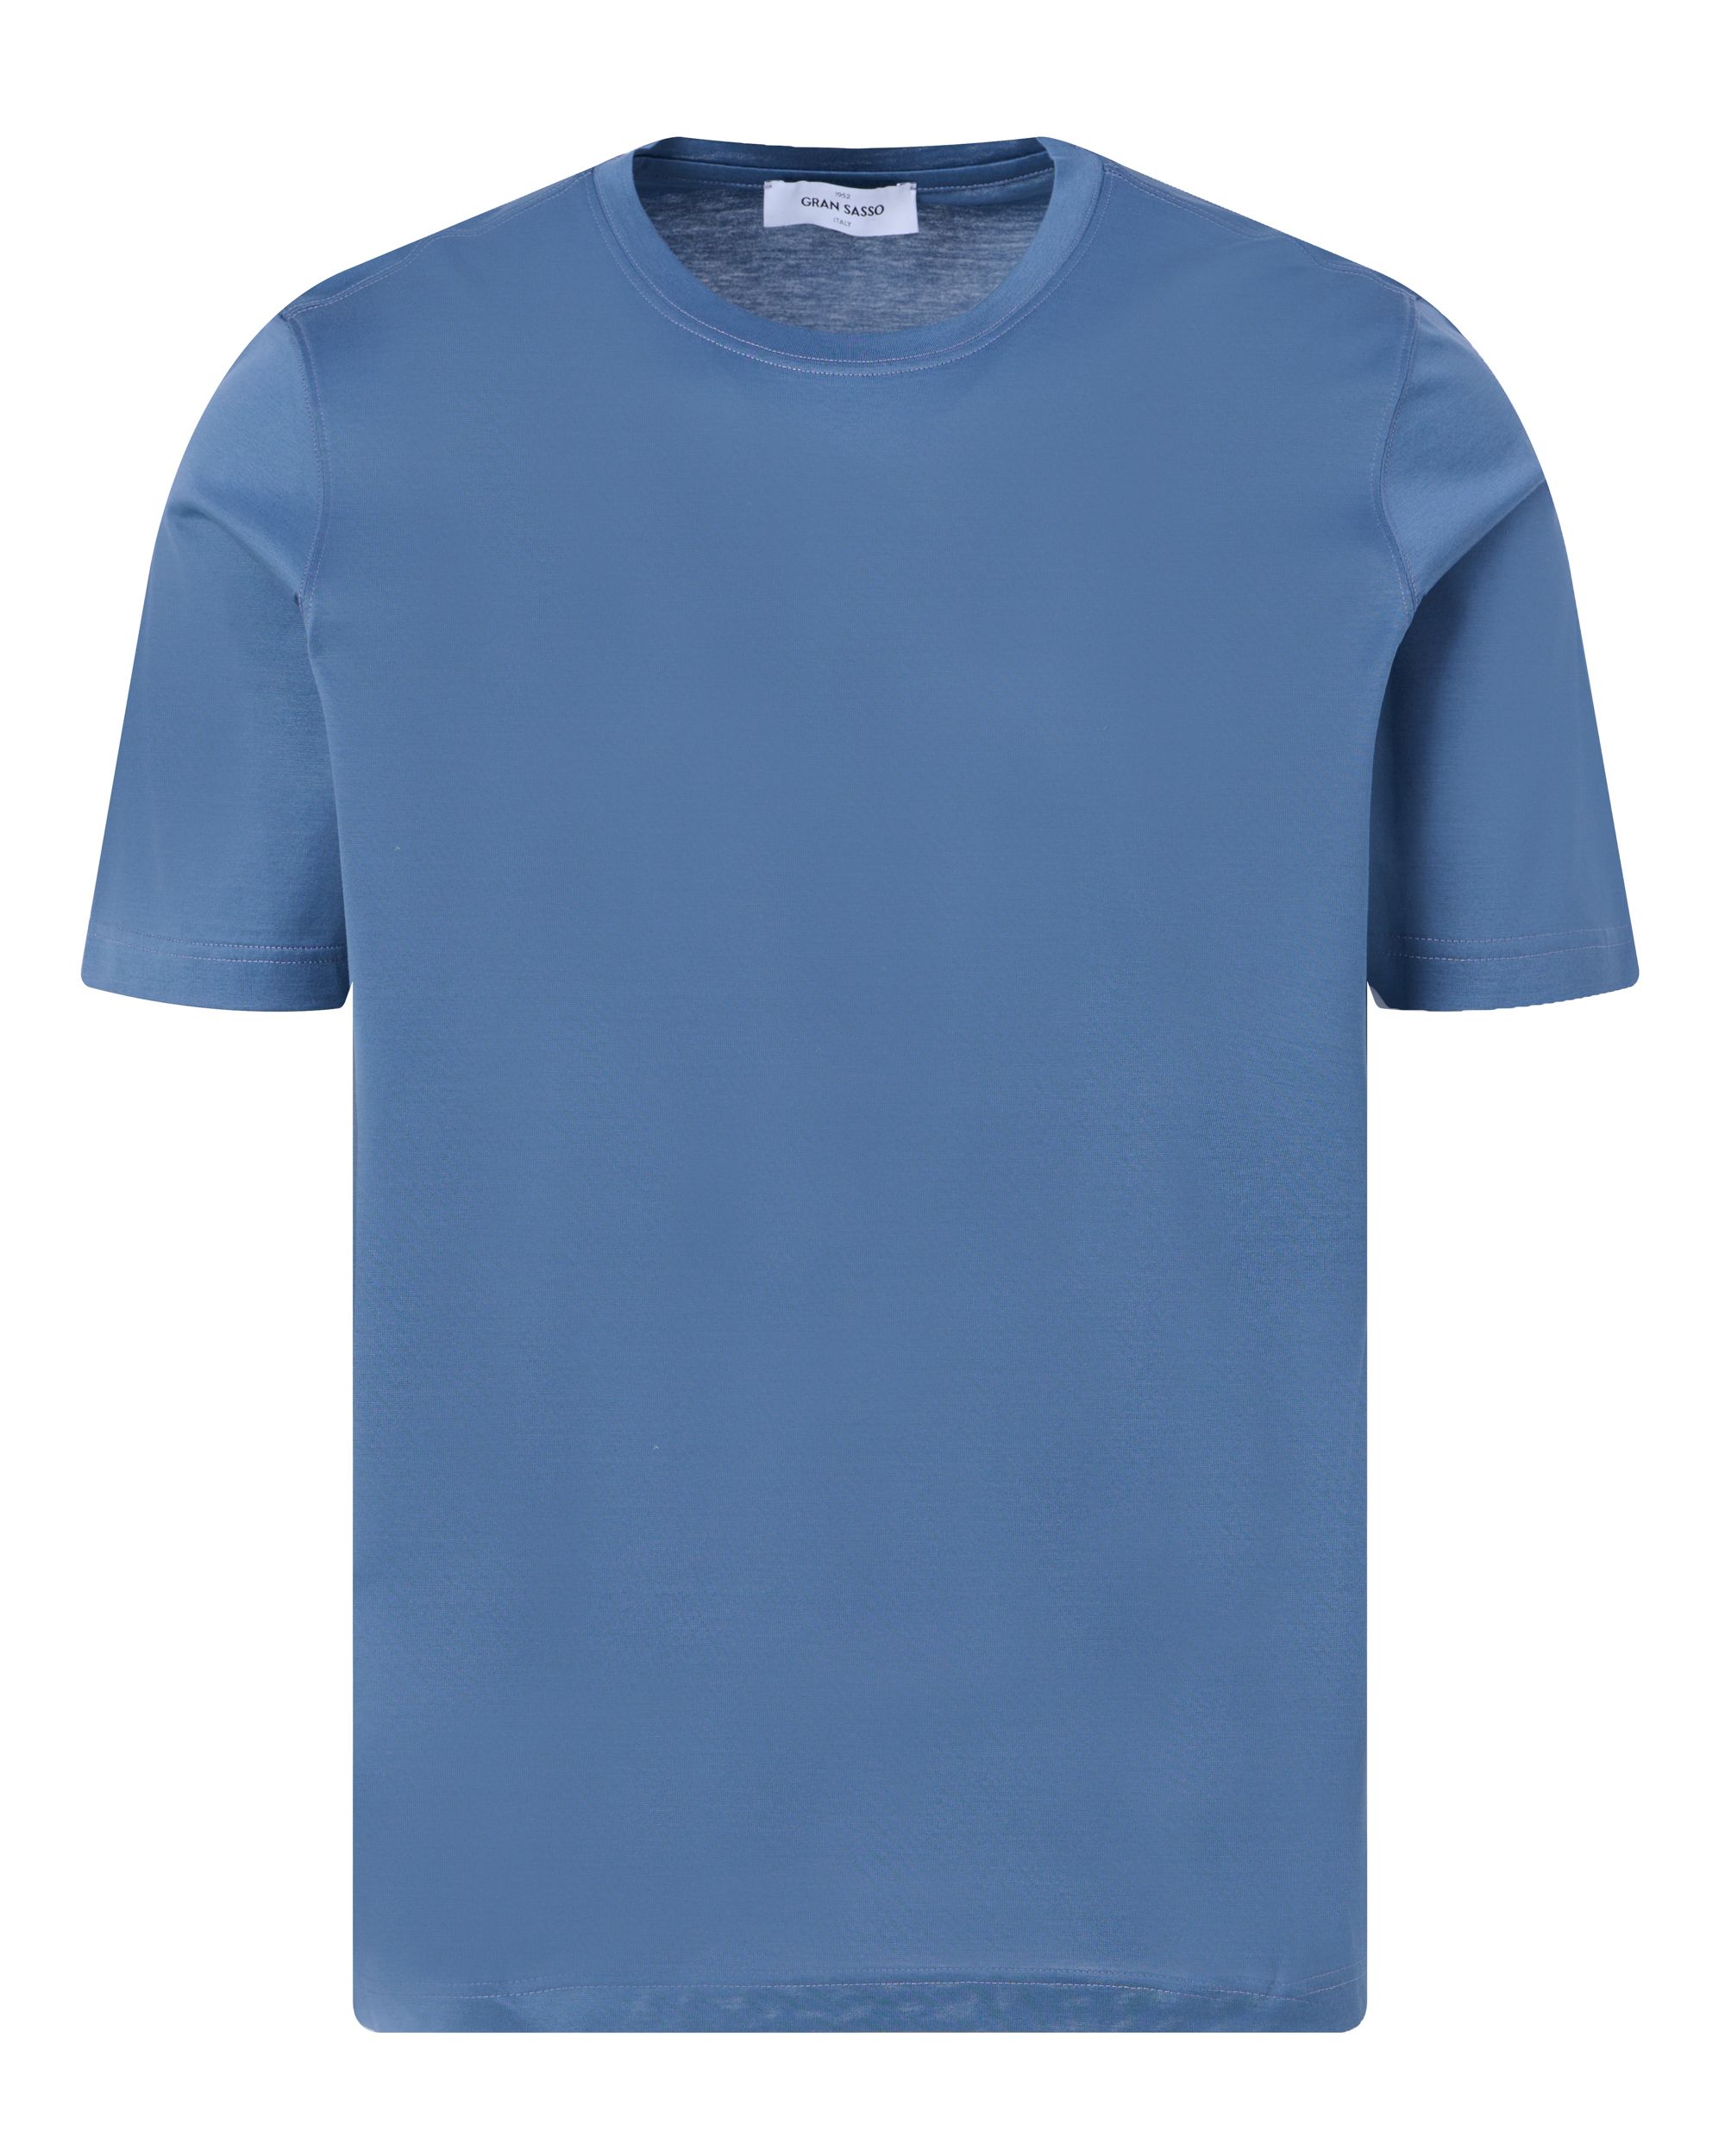 Gran Sasso T-shirt KM Blauw 091804-001-56